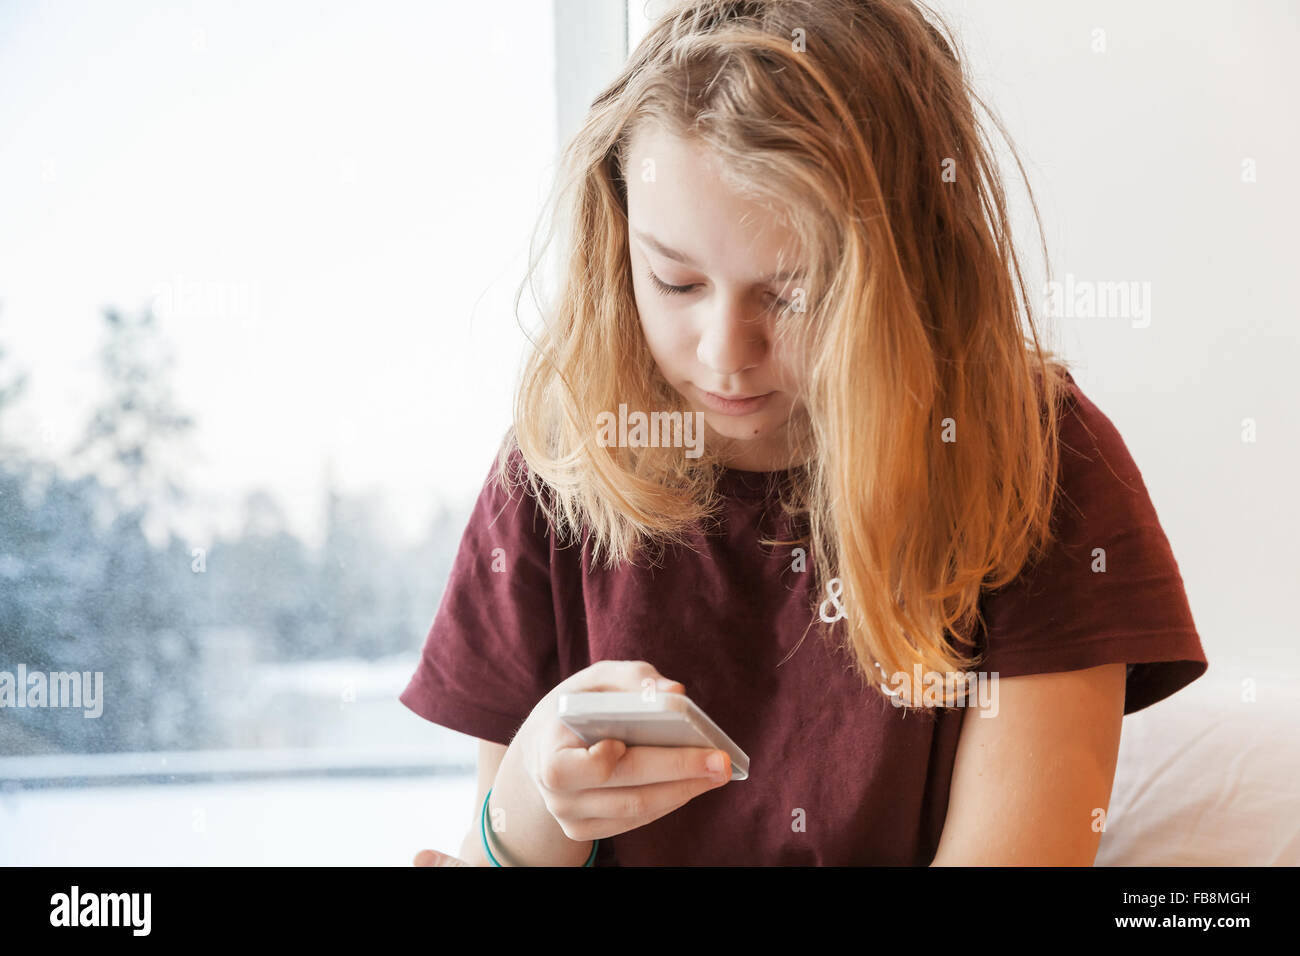 La bionda ragazza seduta vicino alla finestra invernale con lo smartphone Foto Stock